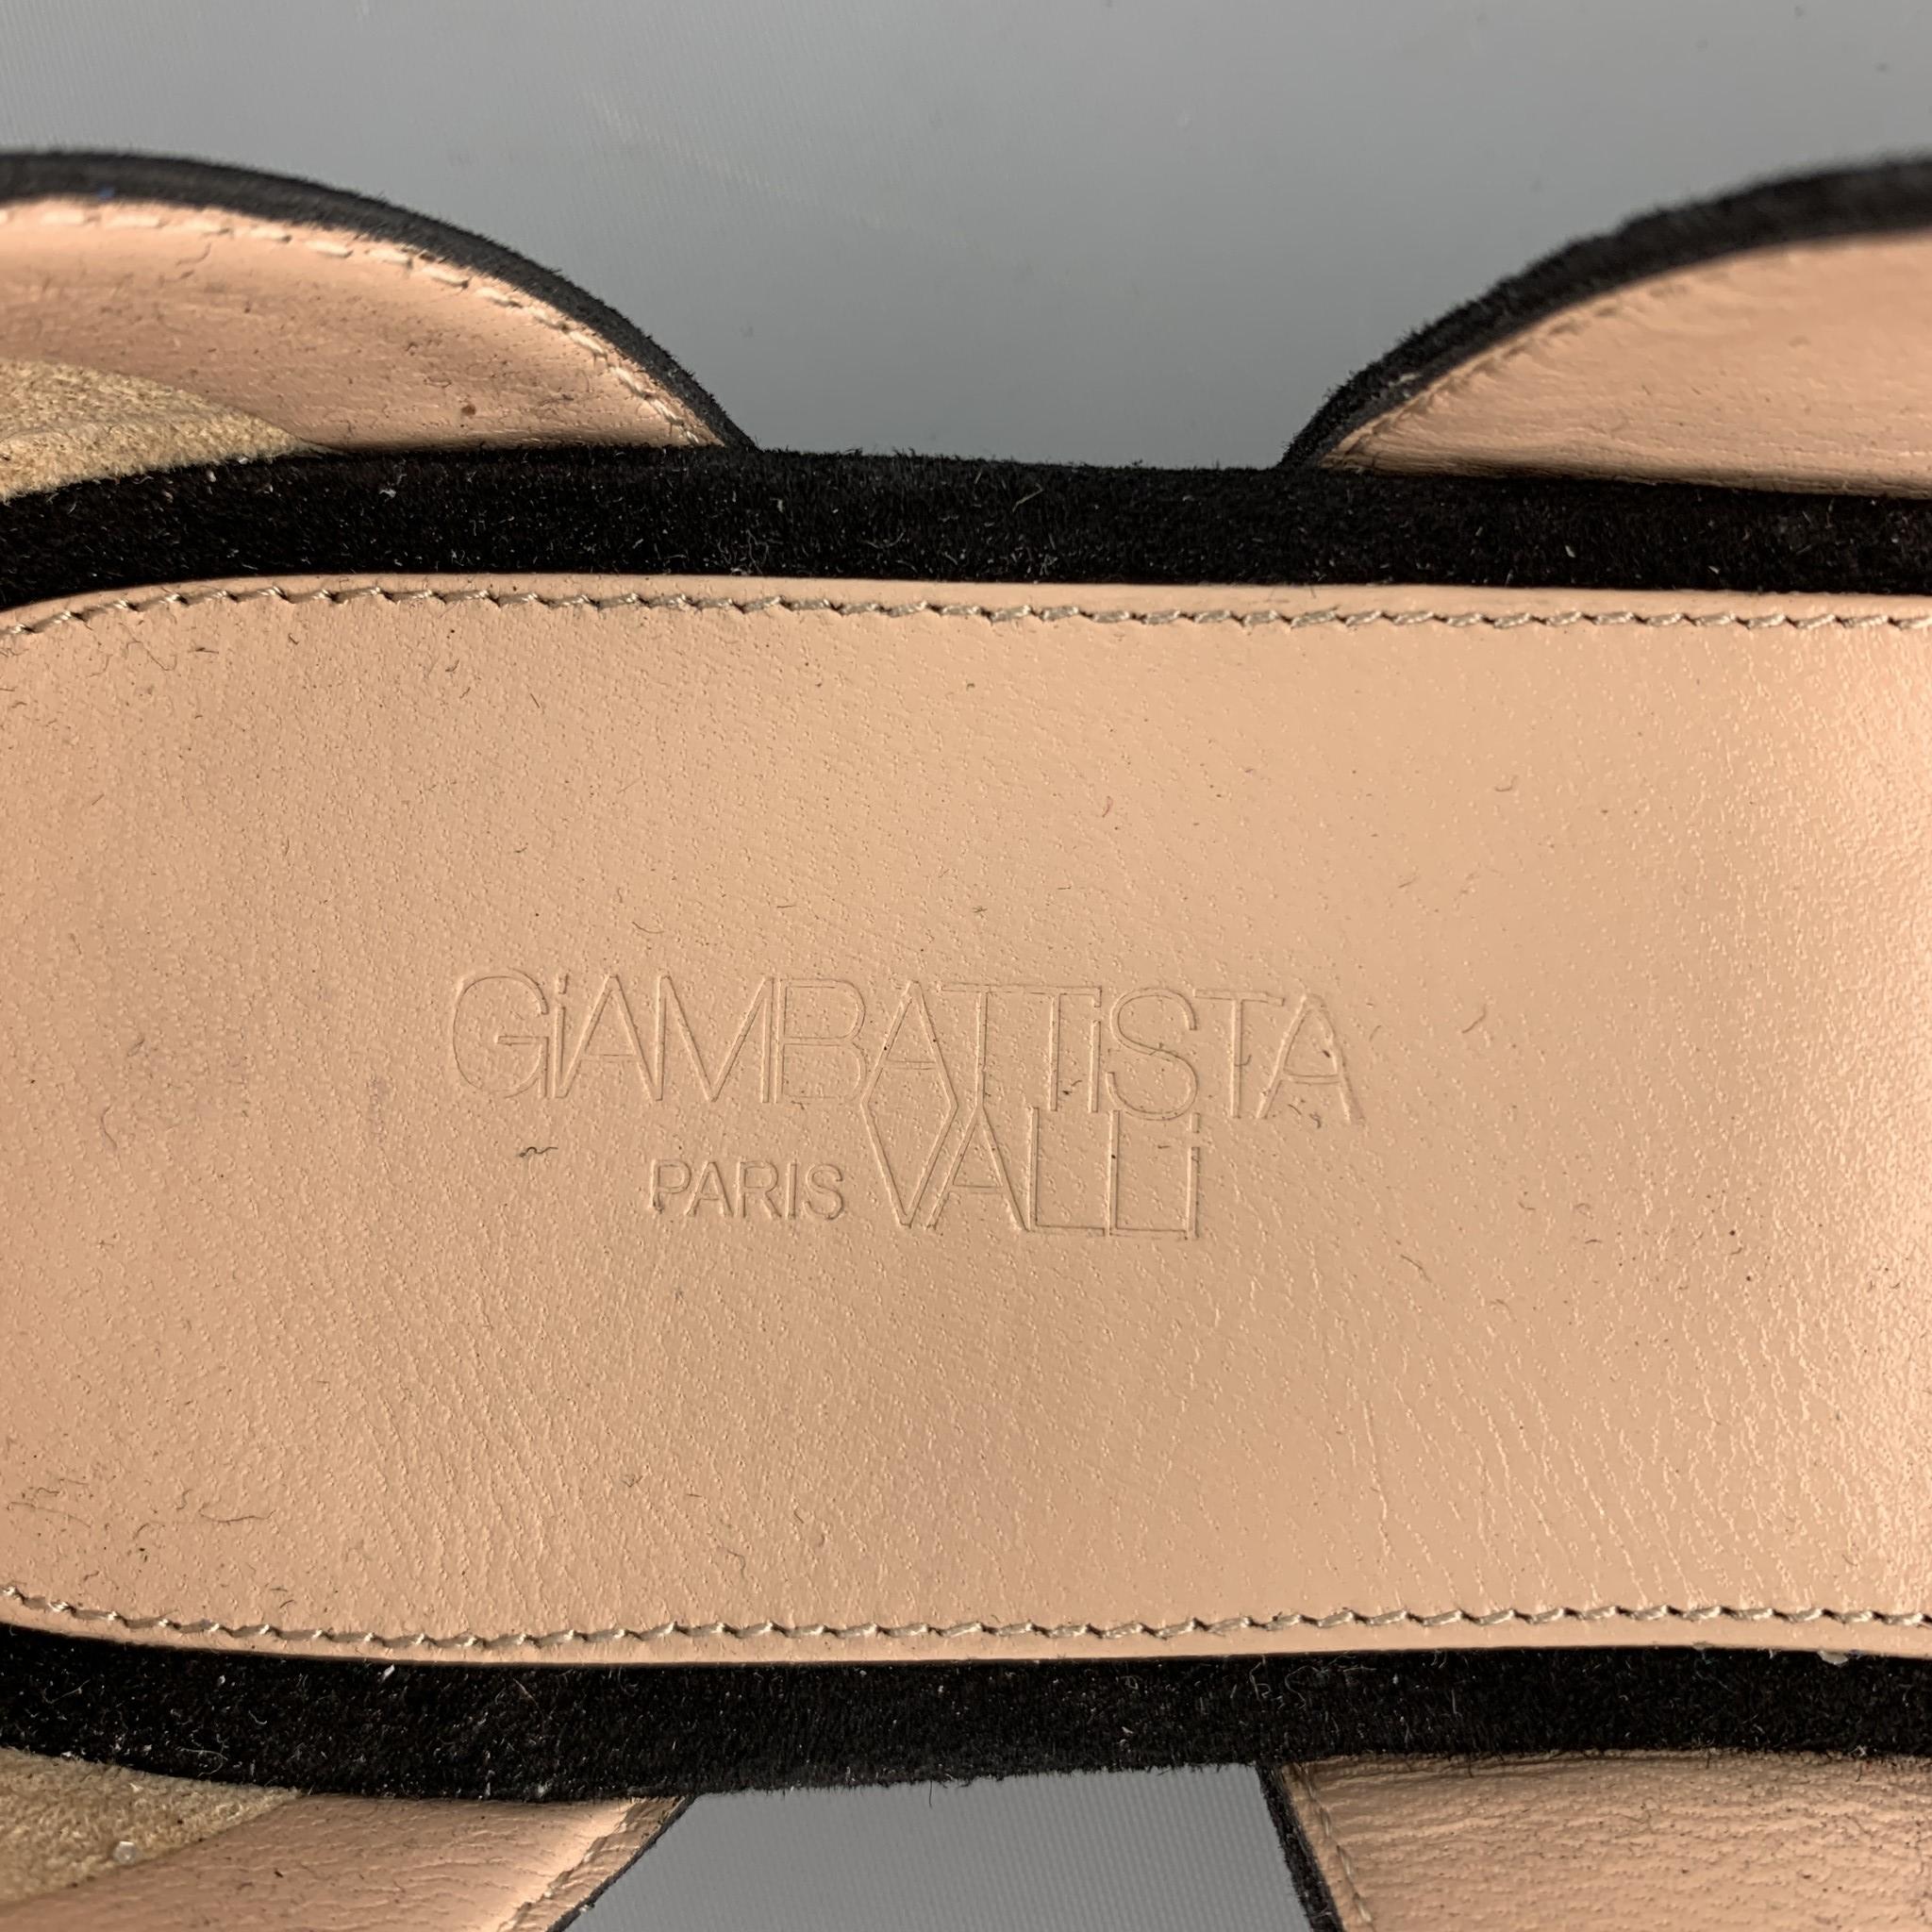 GIAMBATTISTA VALLI S/S 2016 Size 8 Black Suede Glitter Gladiator Sandals 1